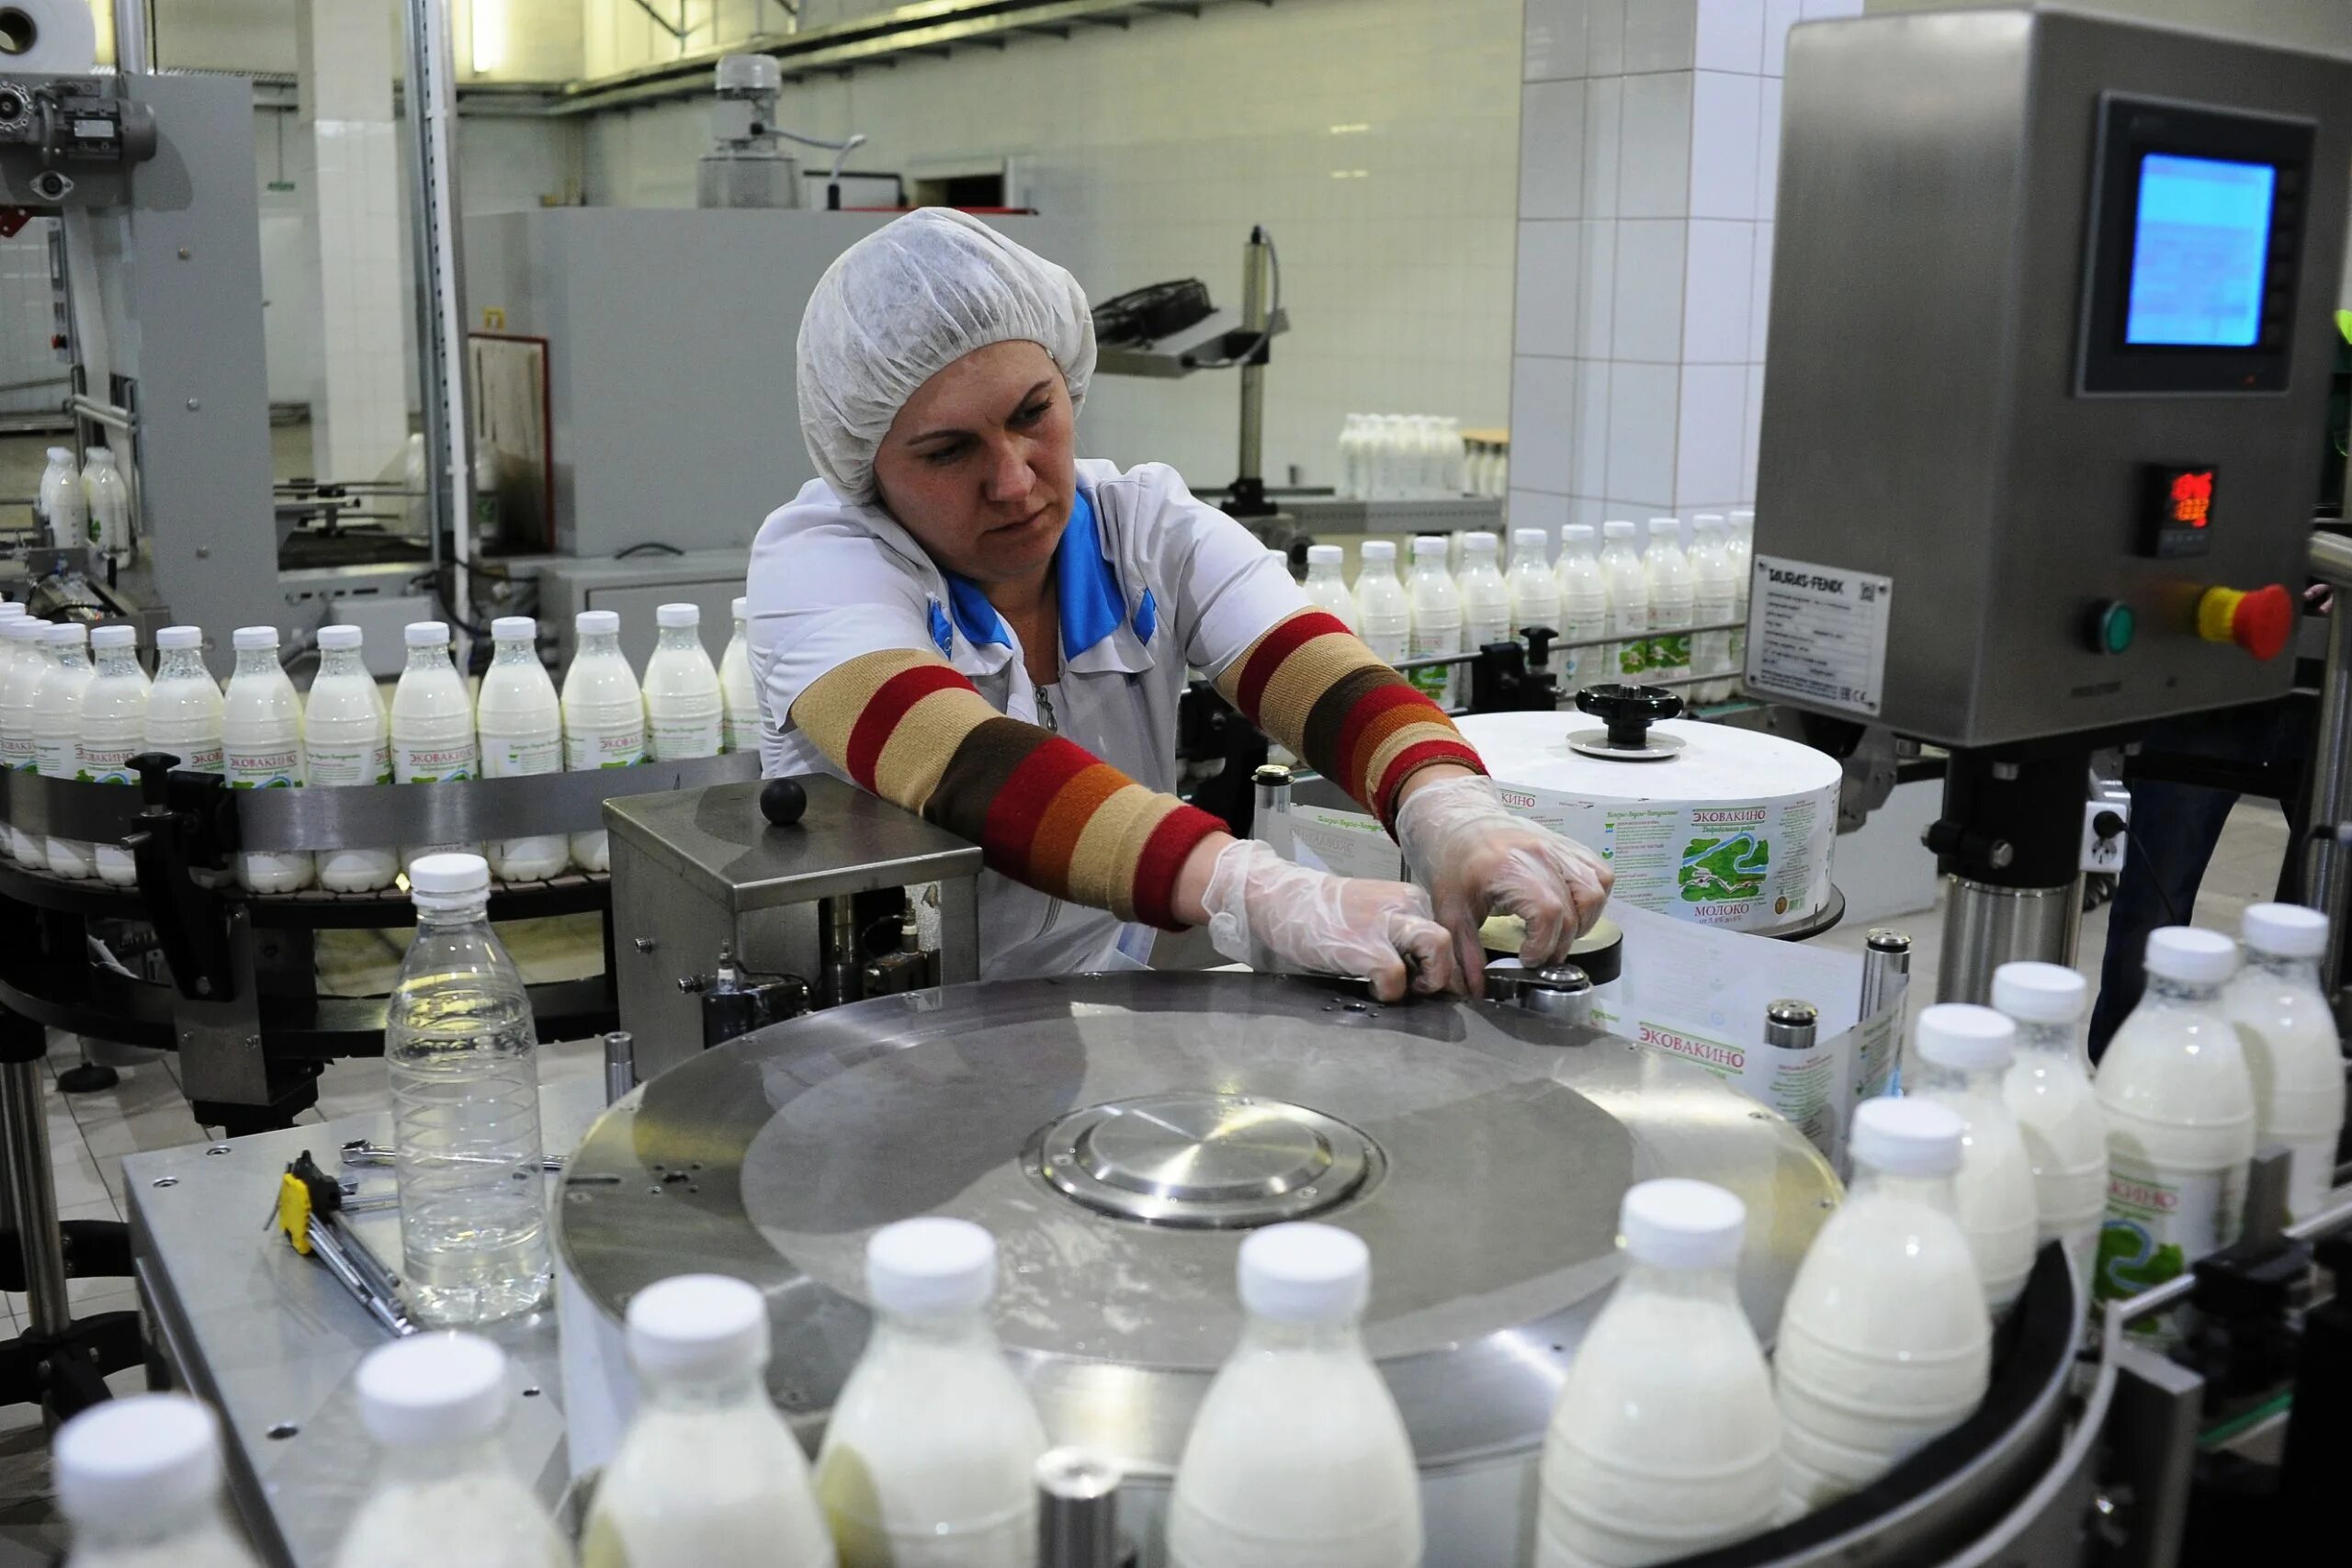 Молочный завод производство. Молочный завод Вакинское Агро. Молочная промышленность. Производство молока. Производство молочных продуктов.